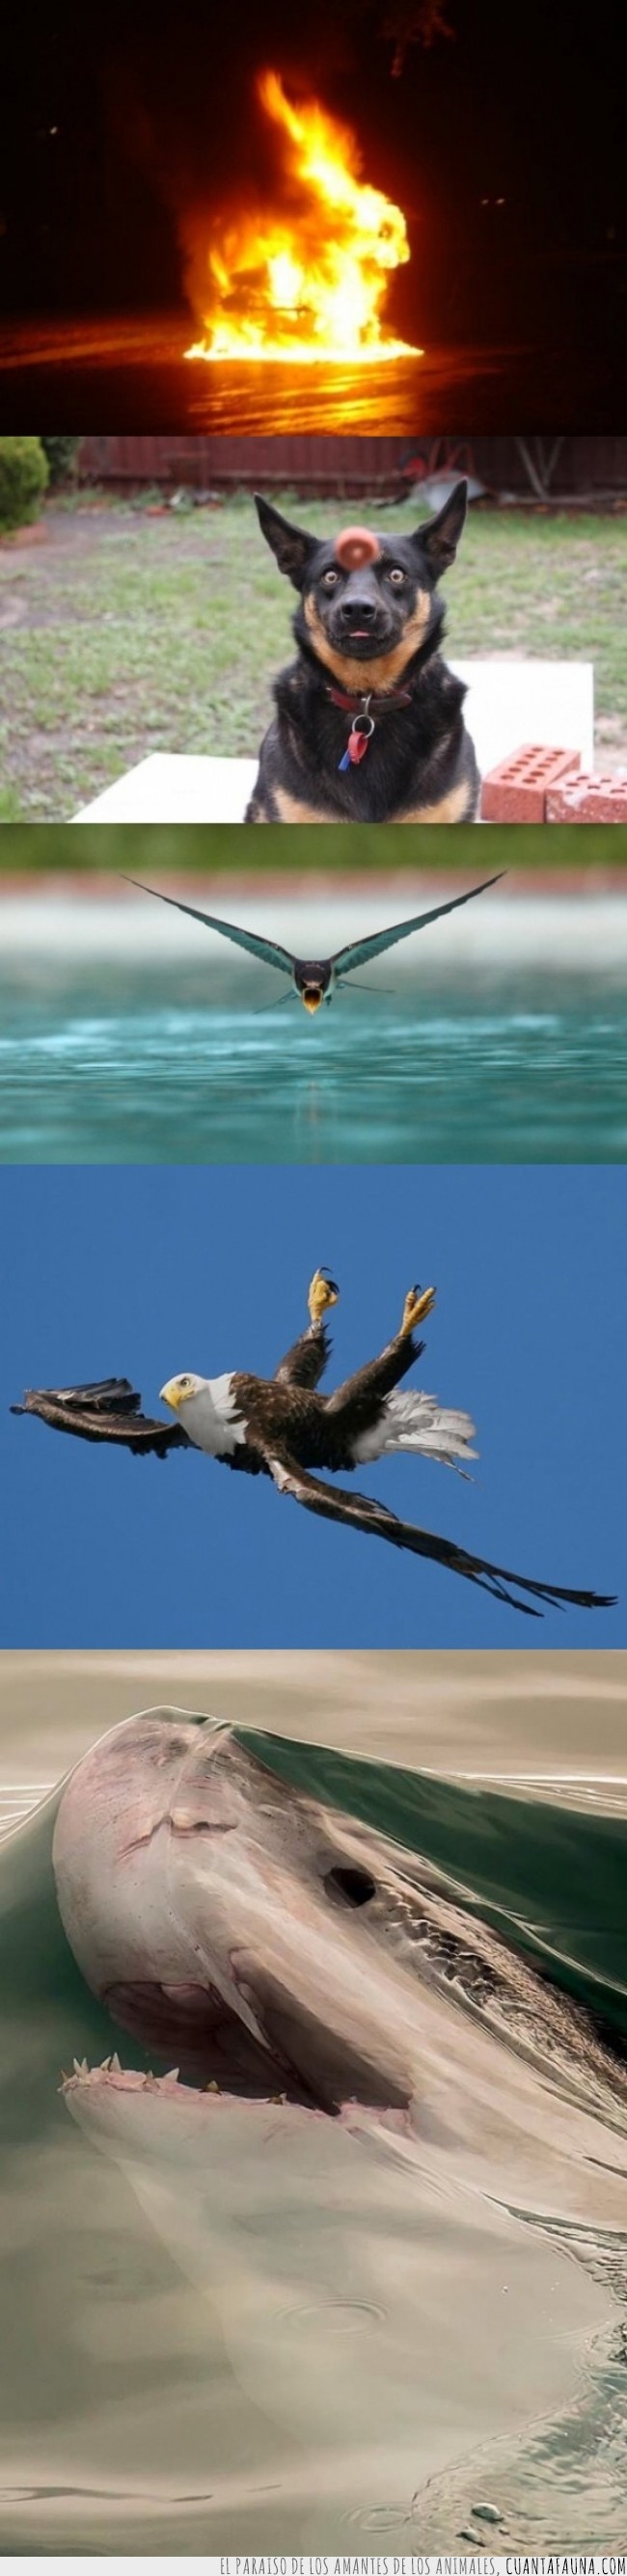 agua,águila,fuego,momento exacto,perro,pez,tiburón